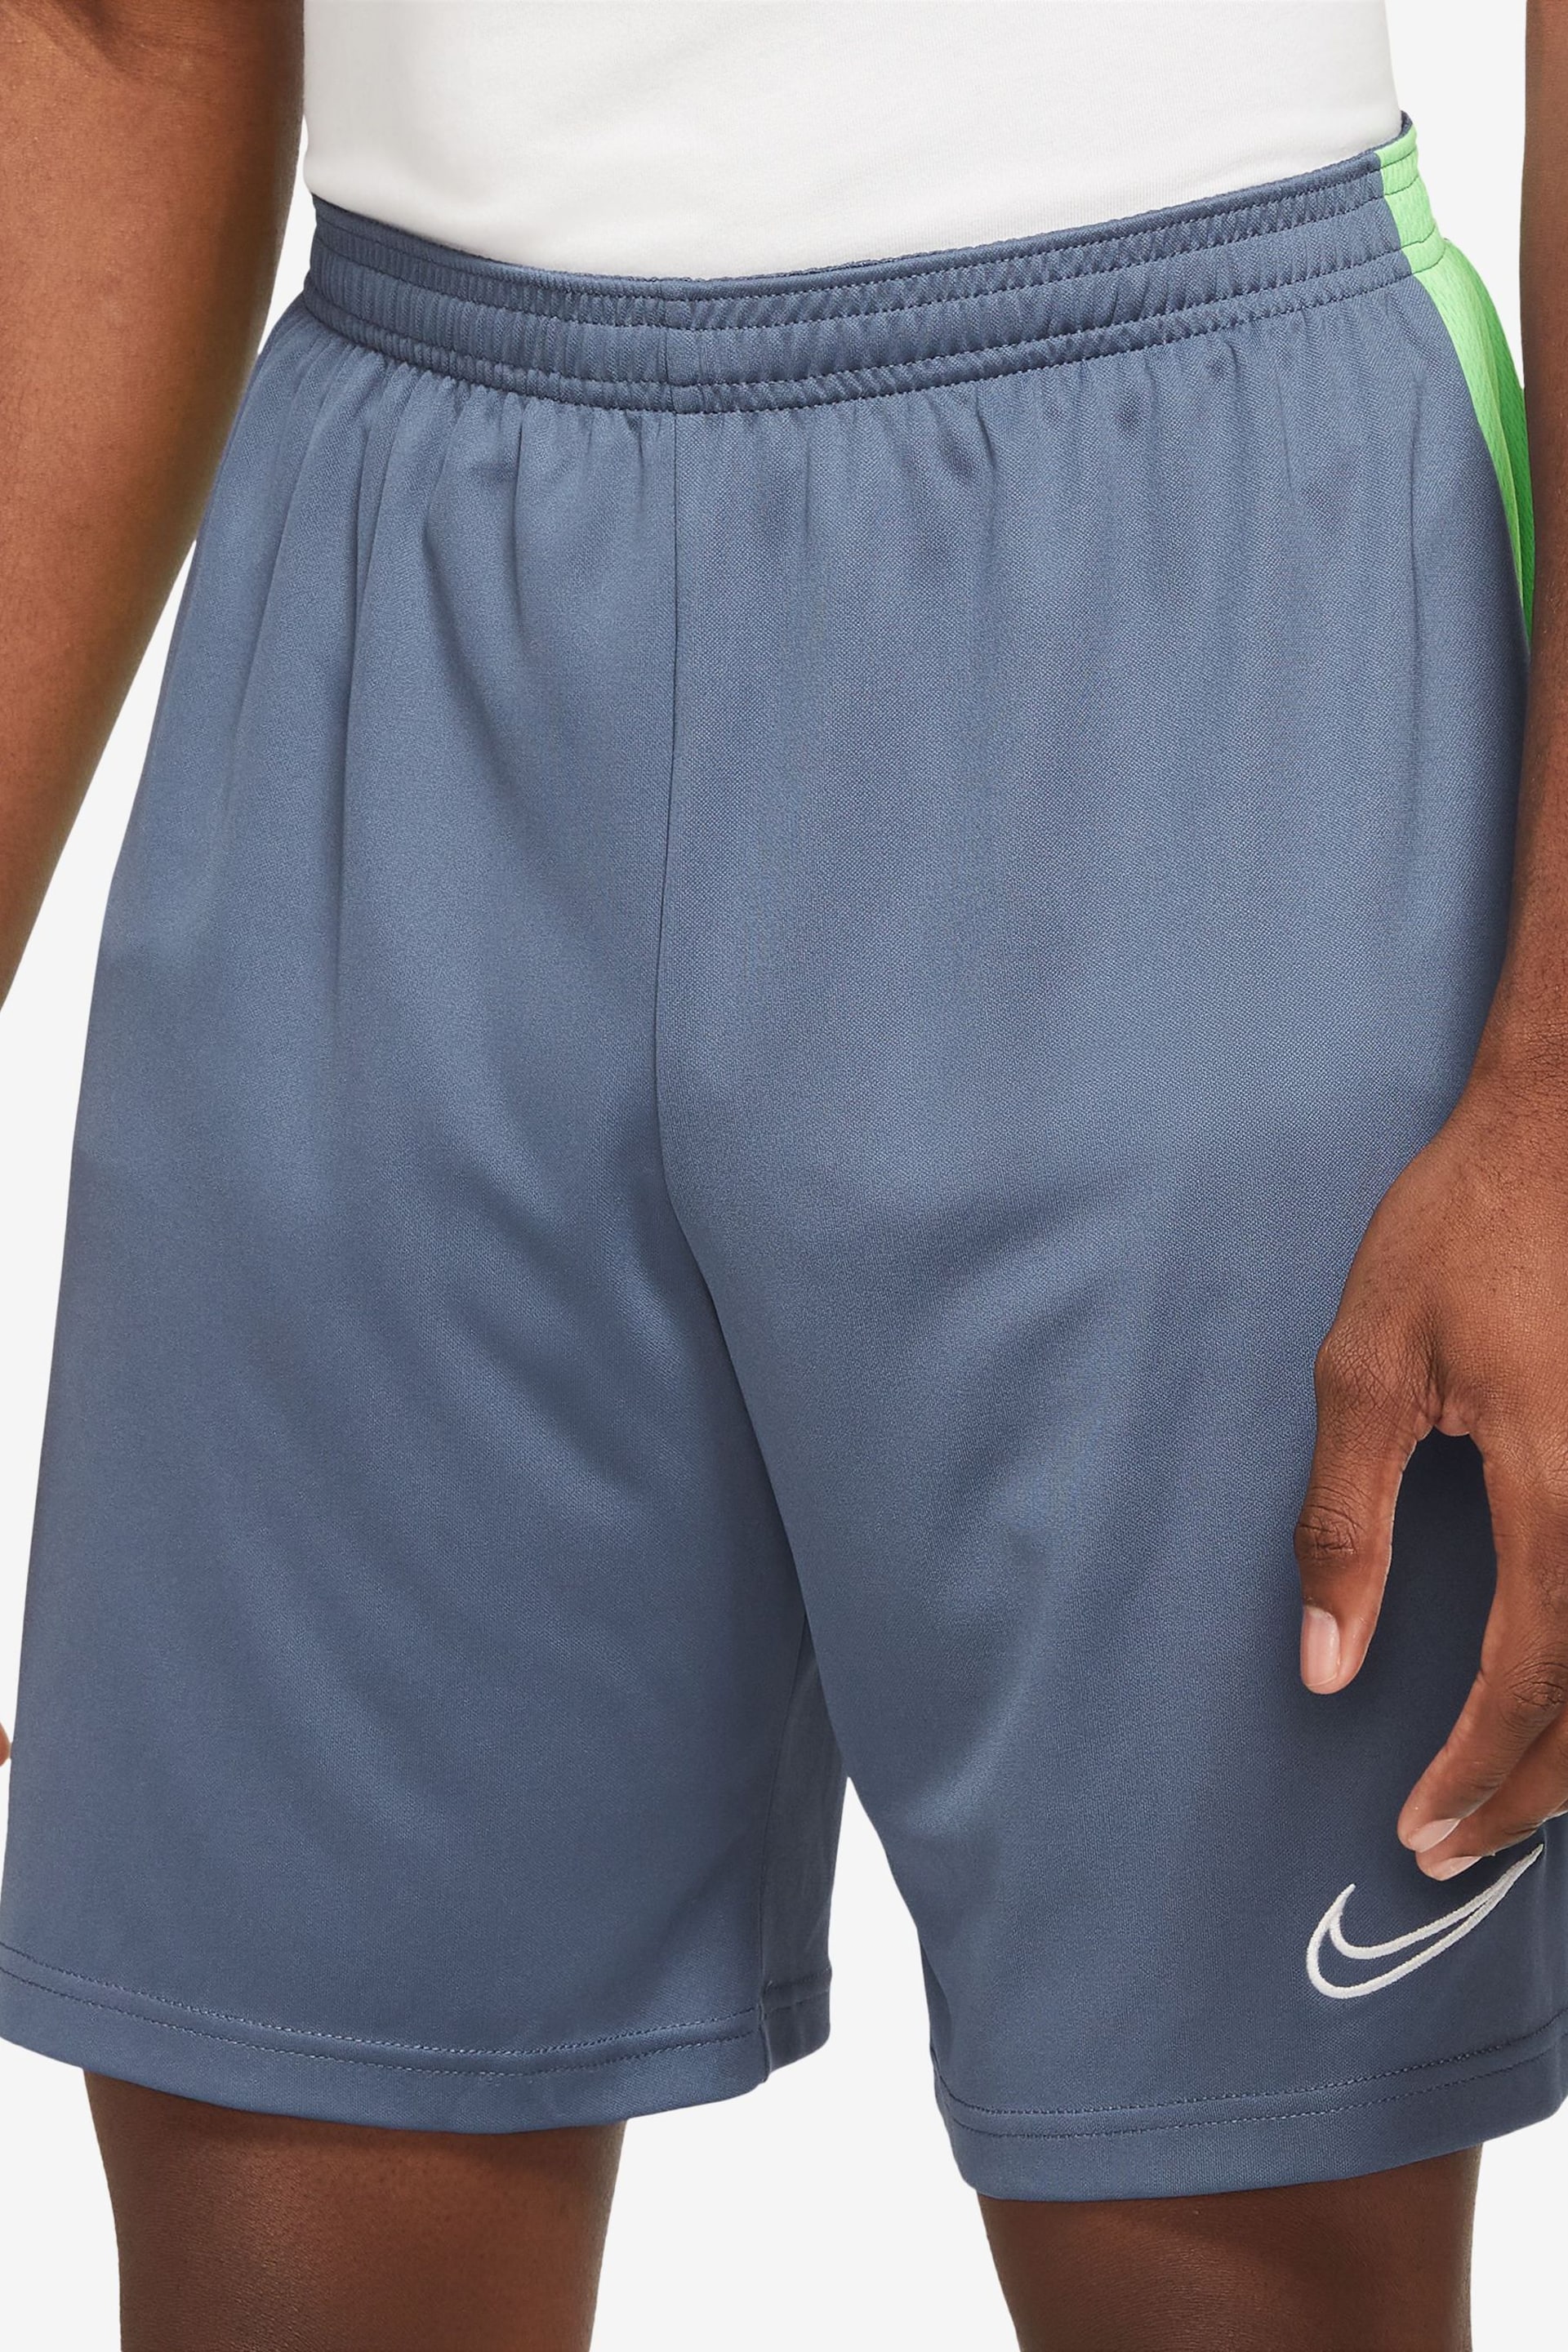 Nike Blue Dri-Fit Academy Training Shorts - Image 1 of 4